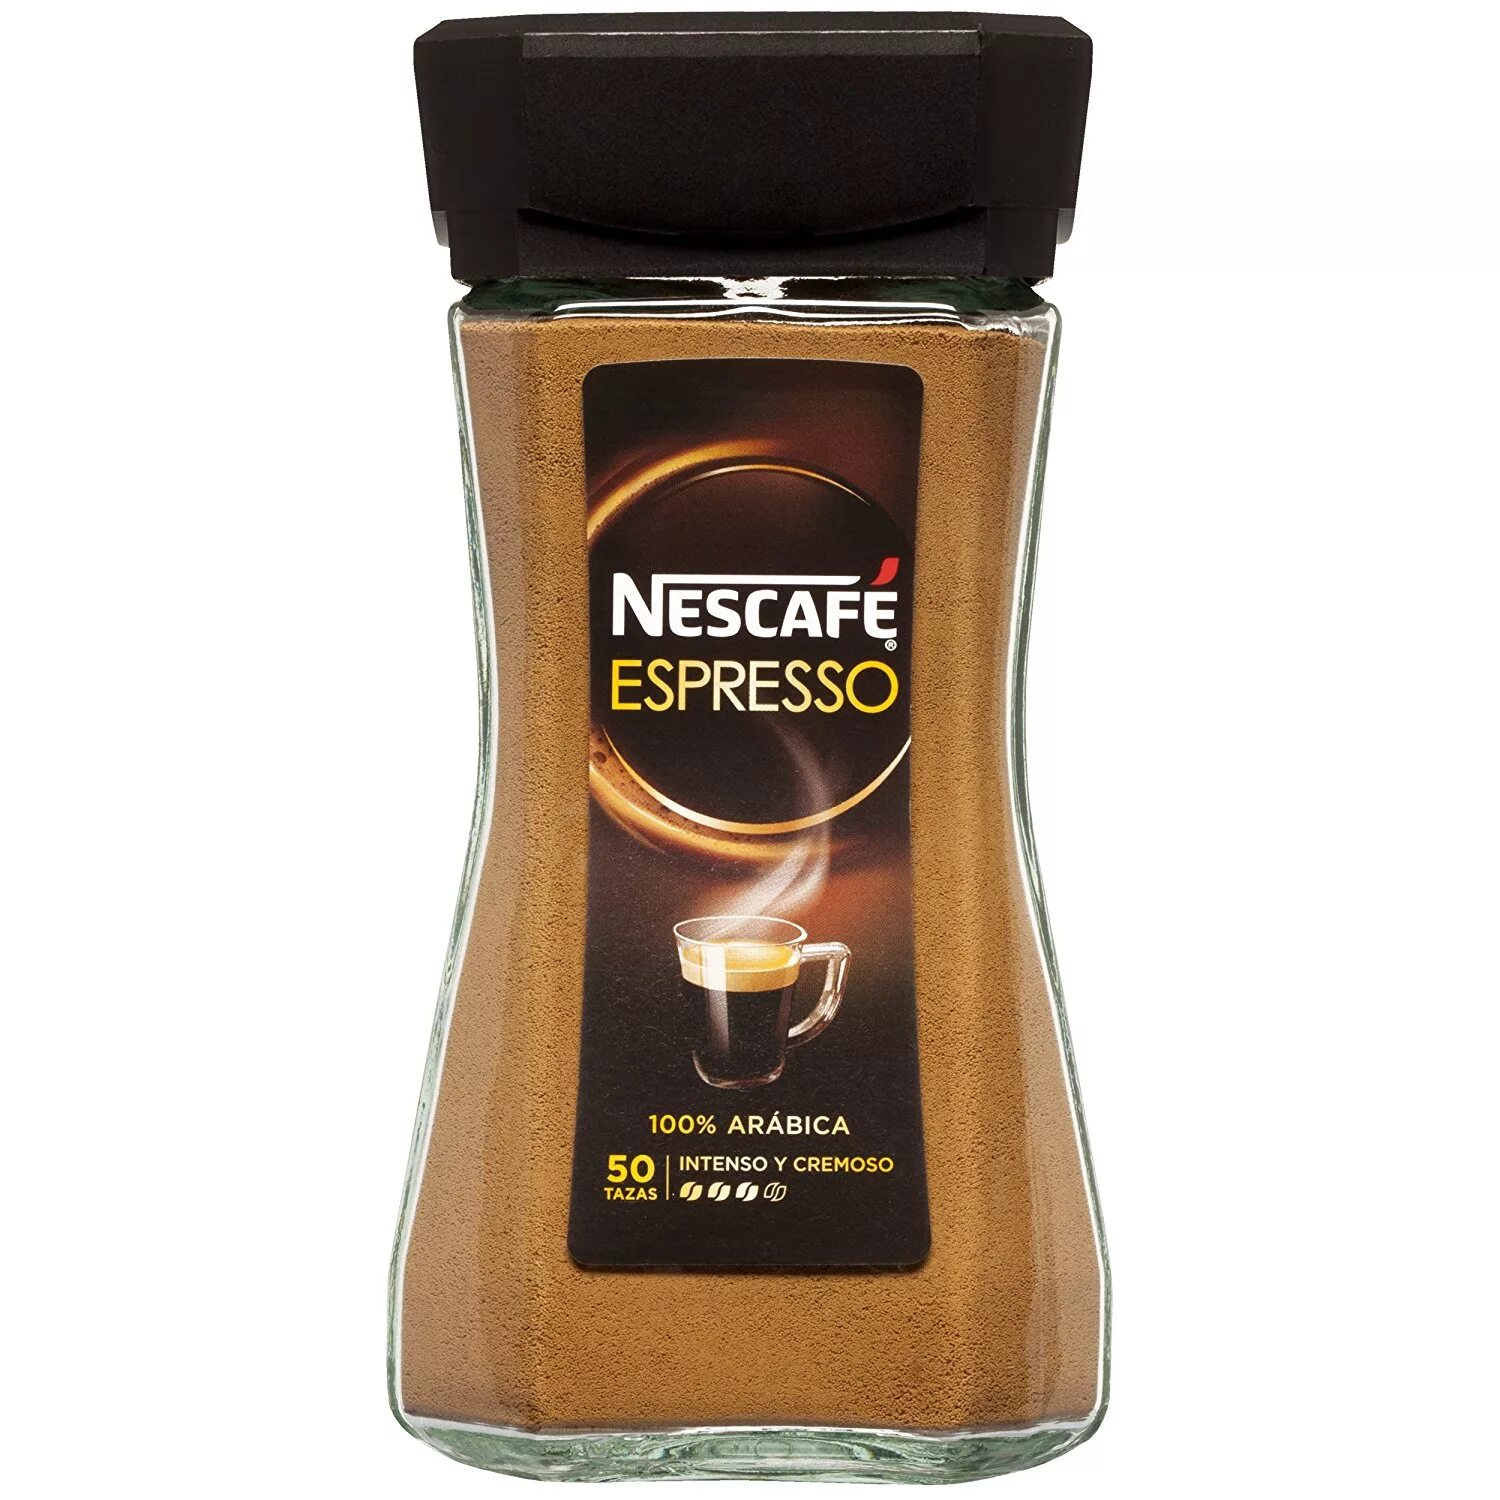 Купить nescafe растворимый кофе. Кофе Нескафе эспрессо. Кофе Нескафе эспрессо растворимый. Nescafe Espresso растворимый. Кофе Нескафе эспрессо капучино.